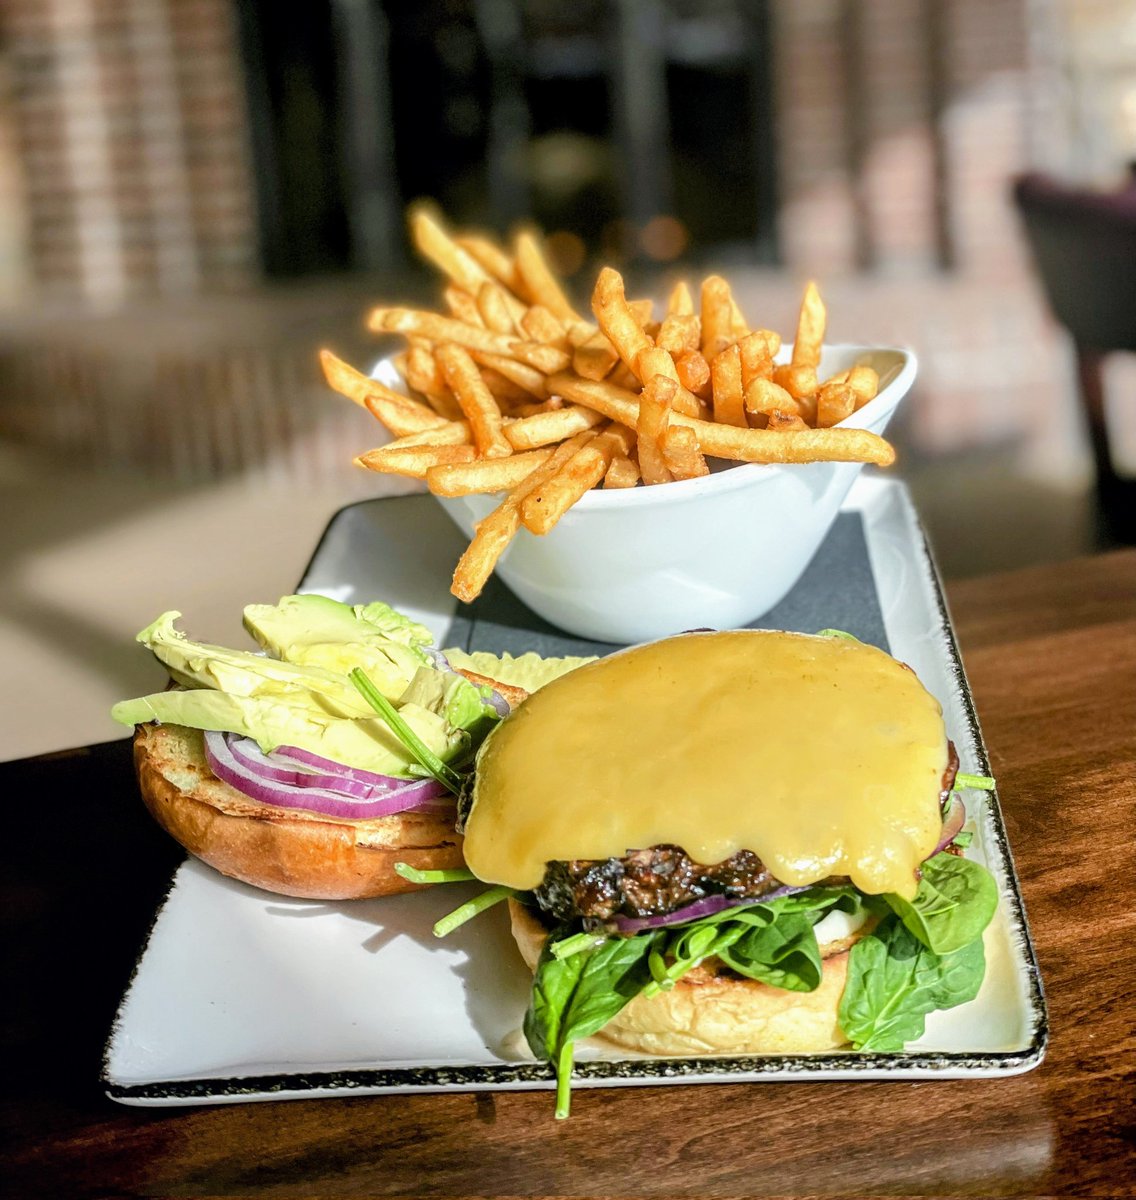 Portobello Perfection! 🍔
Chef's Balsamic Portobello Burger is irresistible!
#foodie #chef #mnfoodie